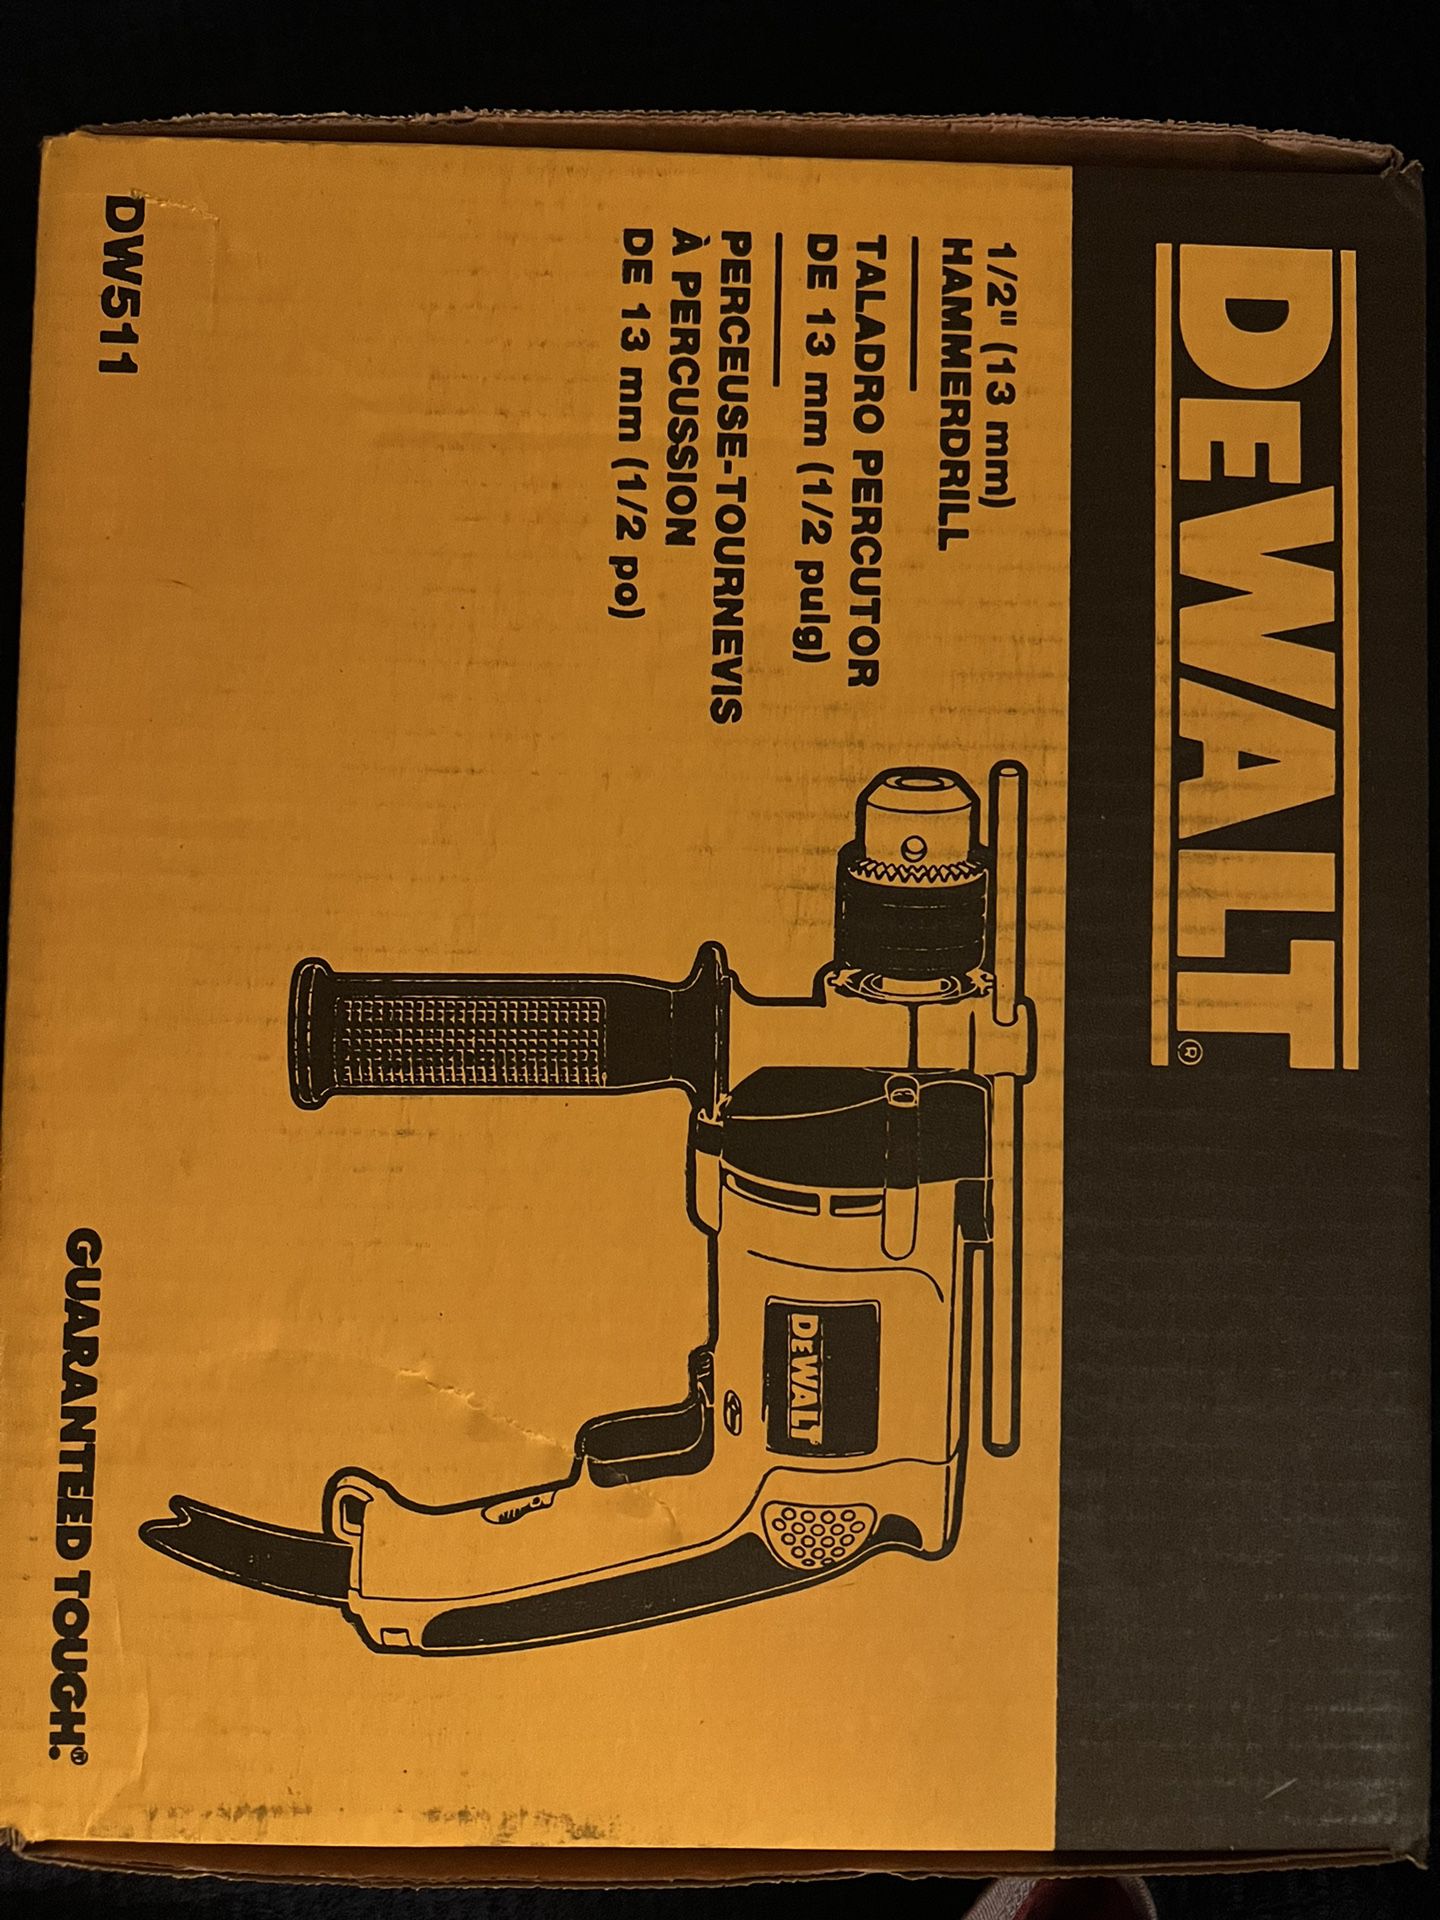 Hammer drill 